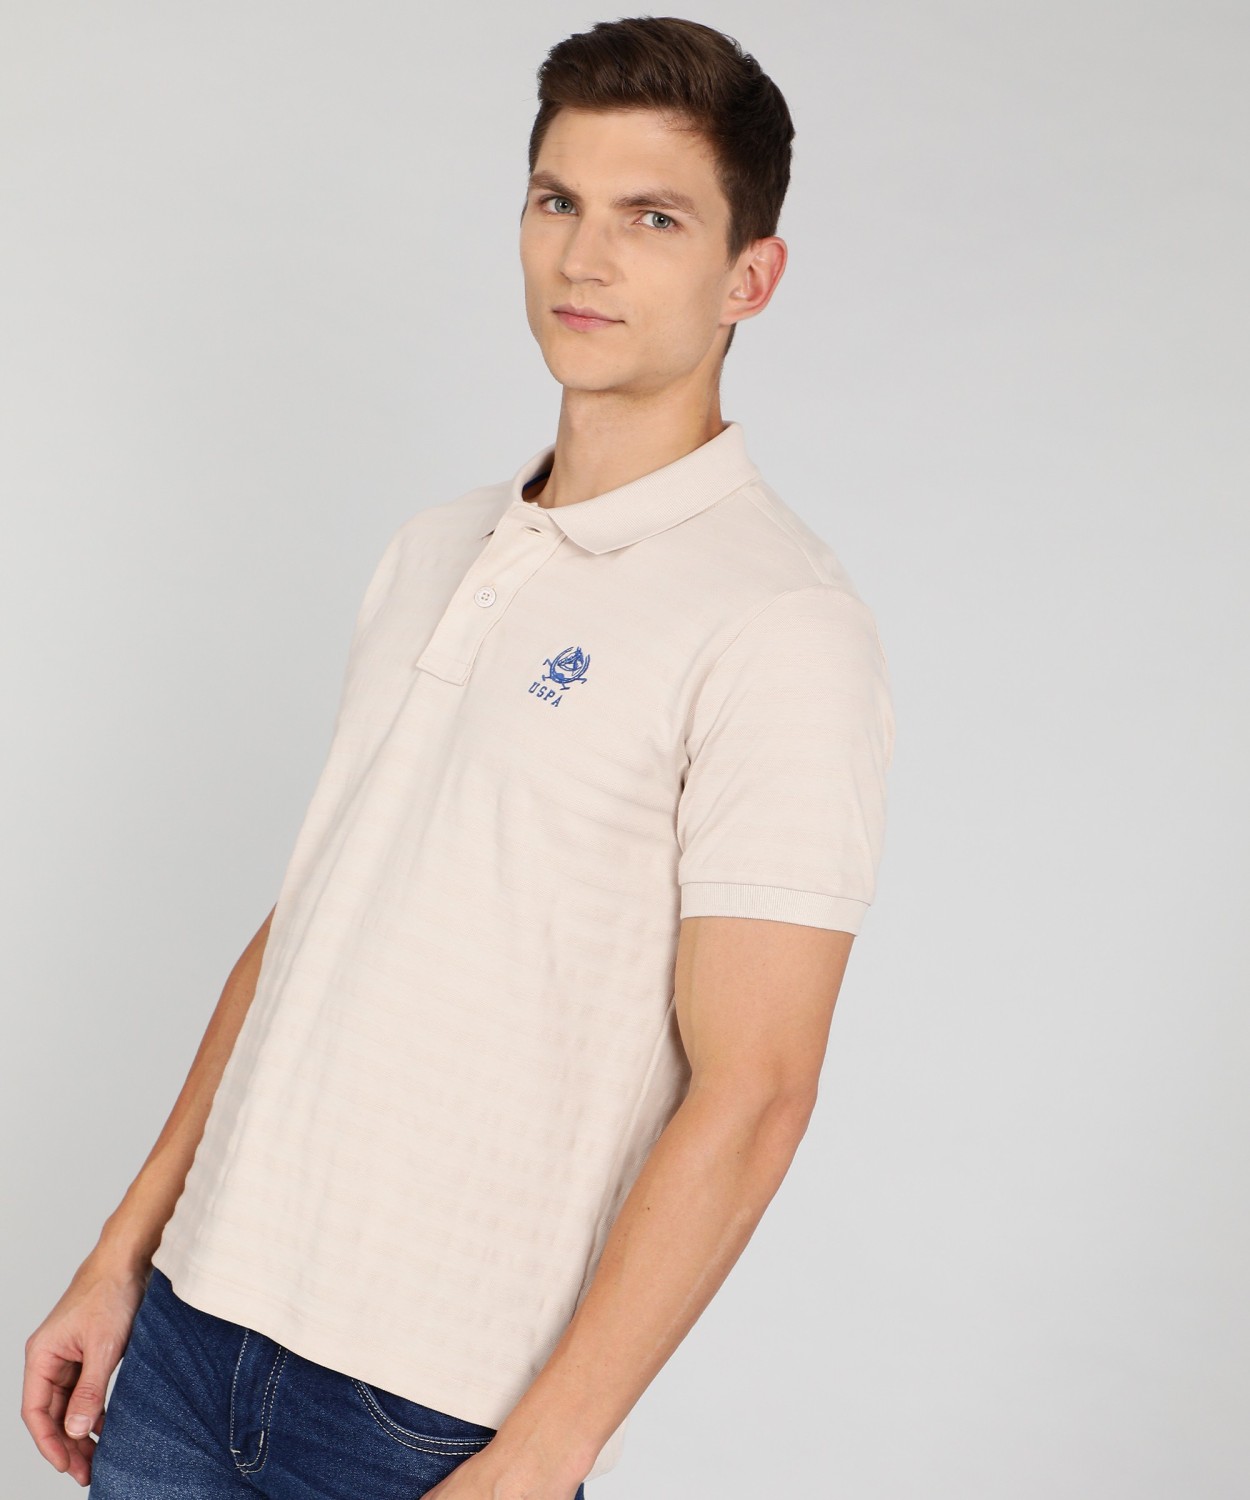 (M) Lacoste Men's Beige Polo Shirt